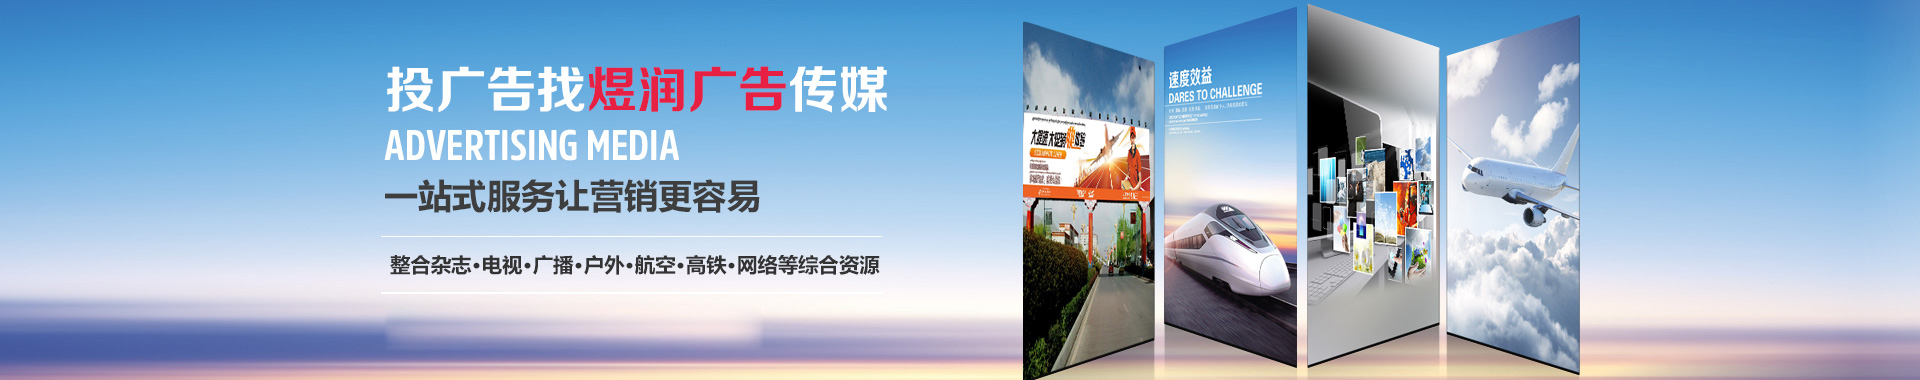 深圳生活频率FM94.2广告|2019较新广告价格|广告电话